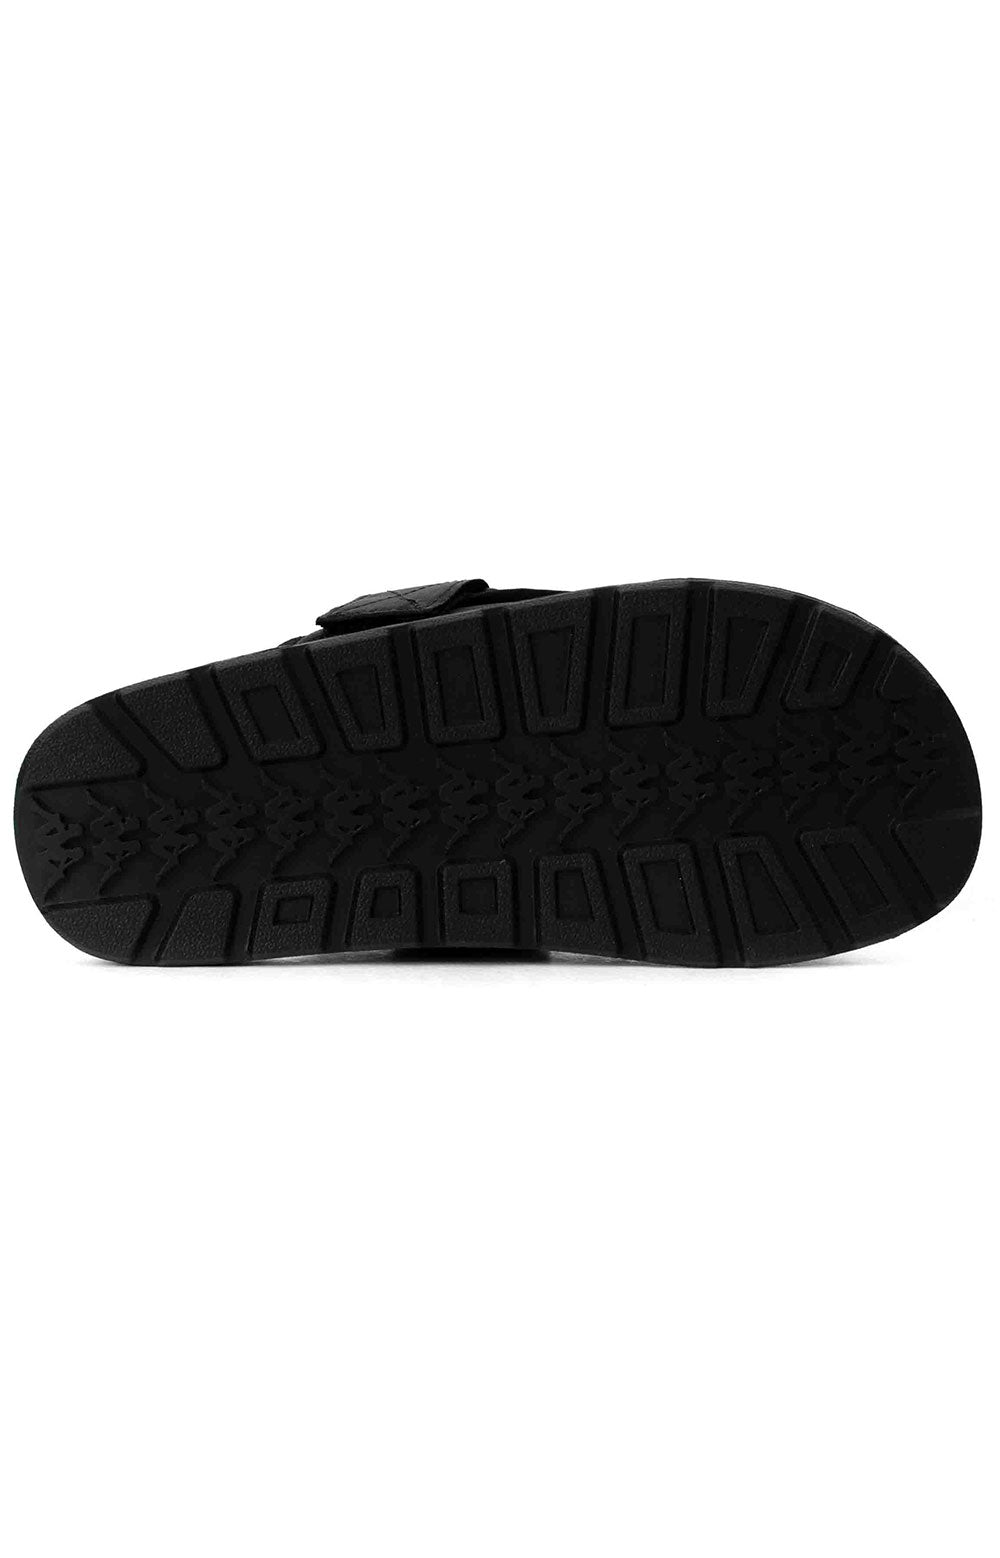 (304KUQ0) 222 Banda Mitel 1 Sandals - Black/White/Black